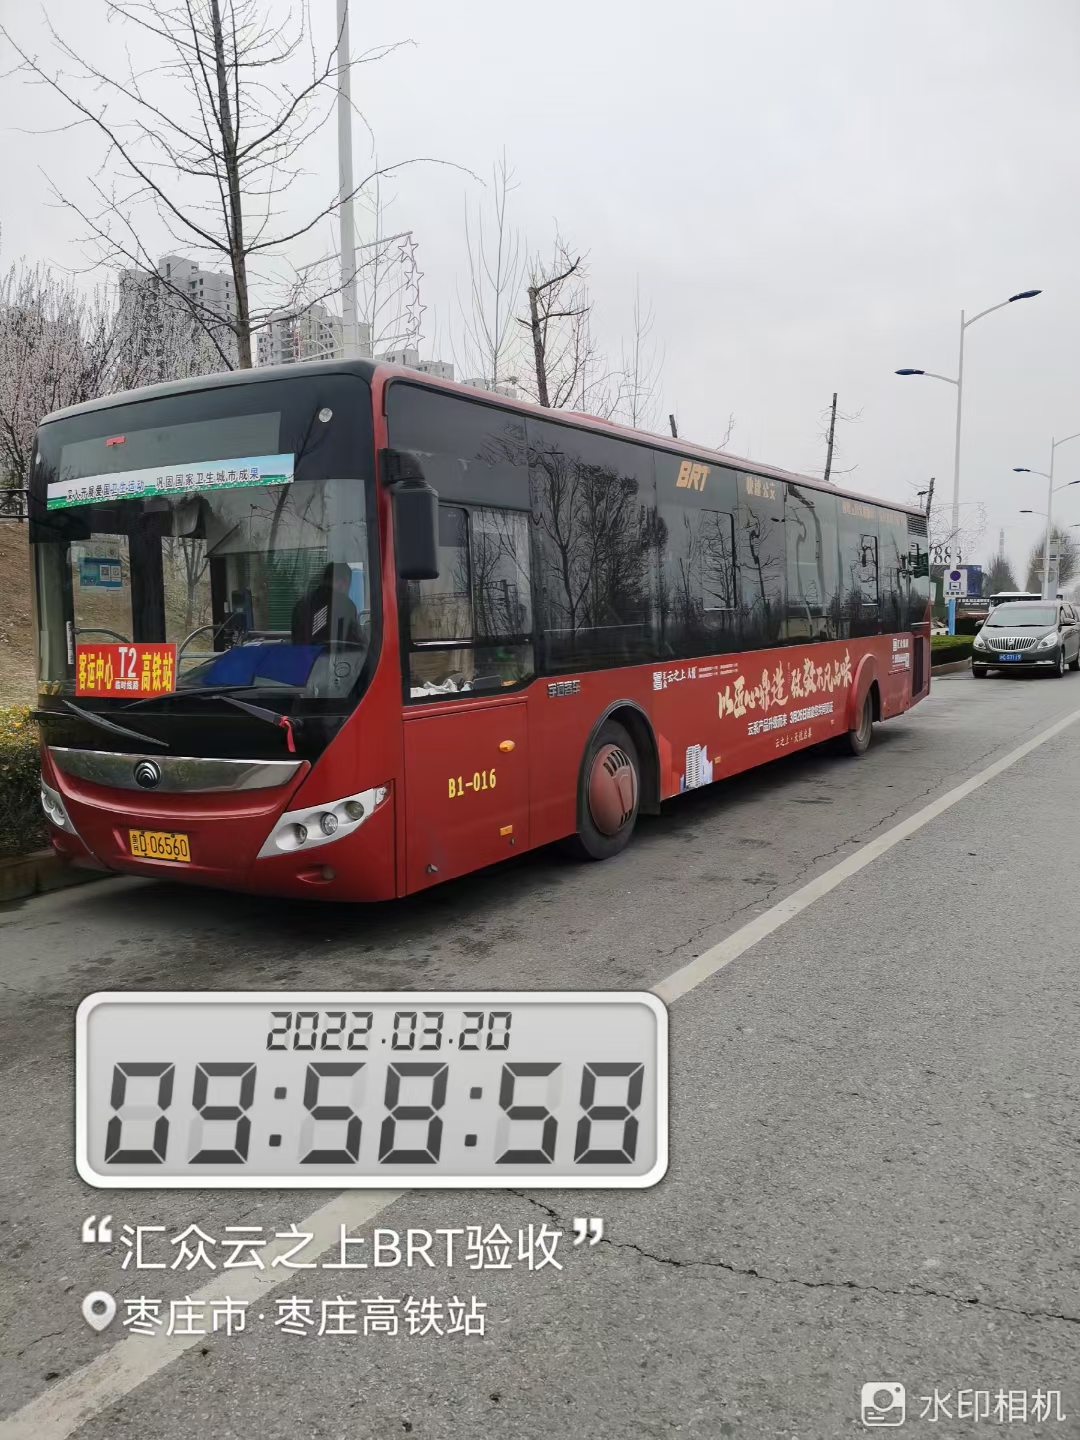 山东枣庄BRT公交车媒体车身